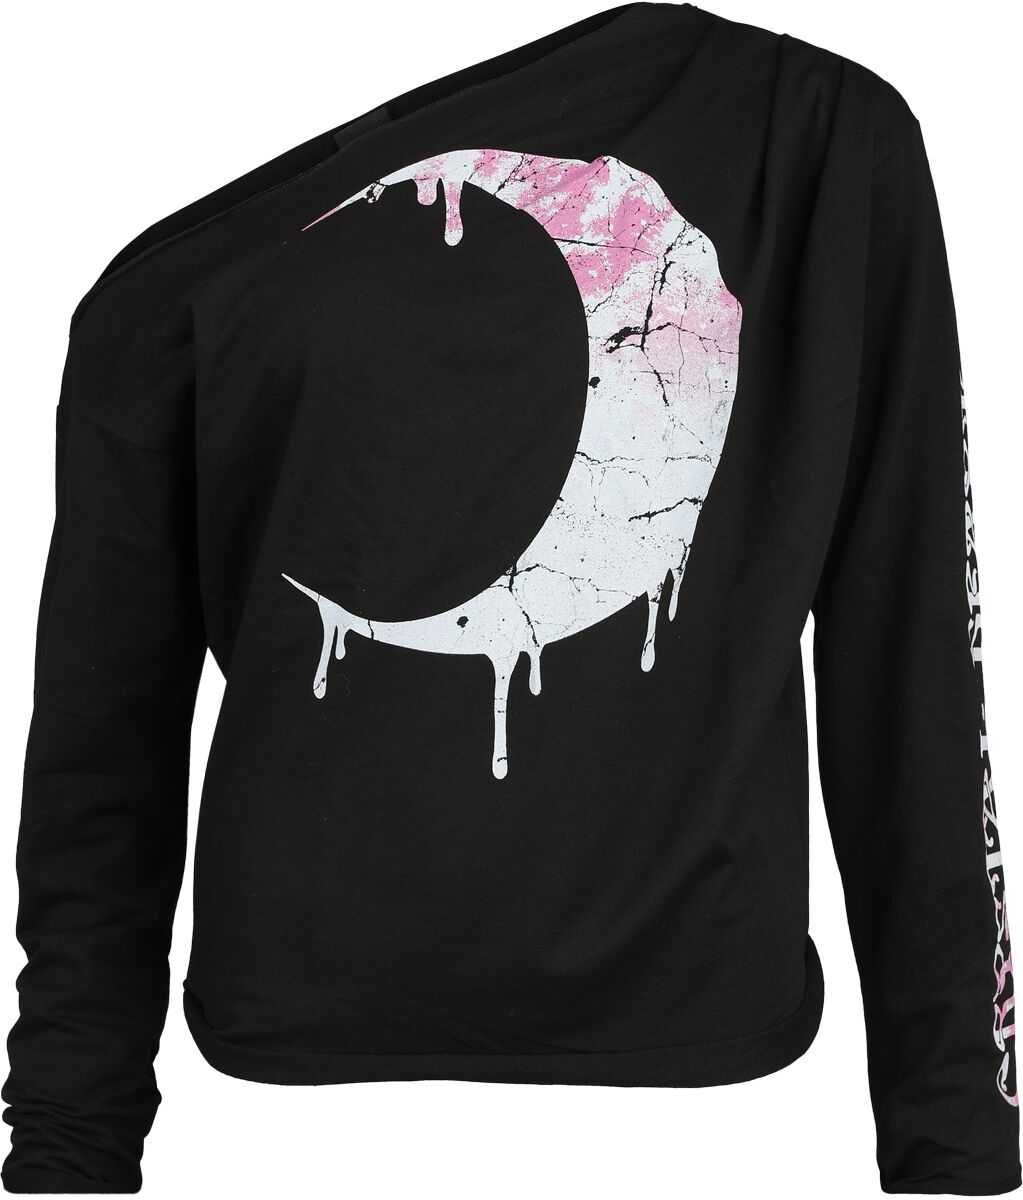 Outer Vision - Gothic Sweatshirt - Artemis - S bis XXL - für Damen - Größe L - schwarz